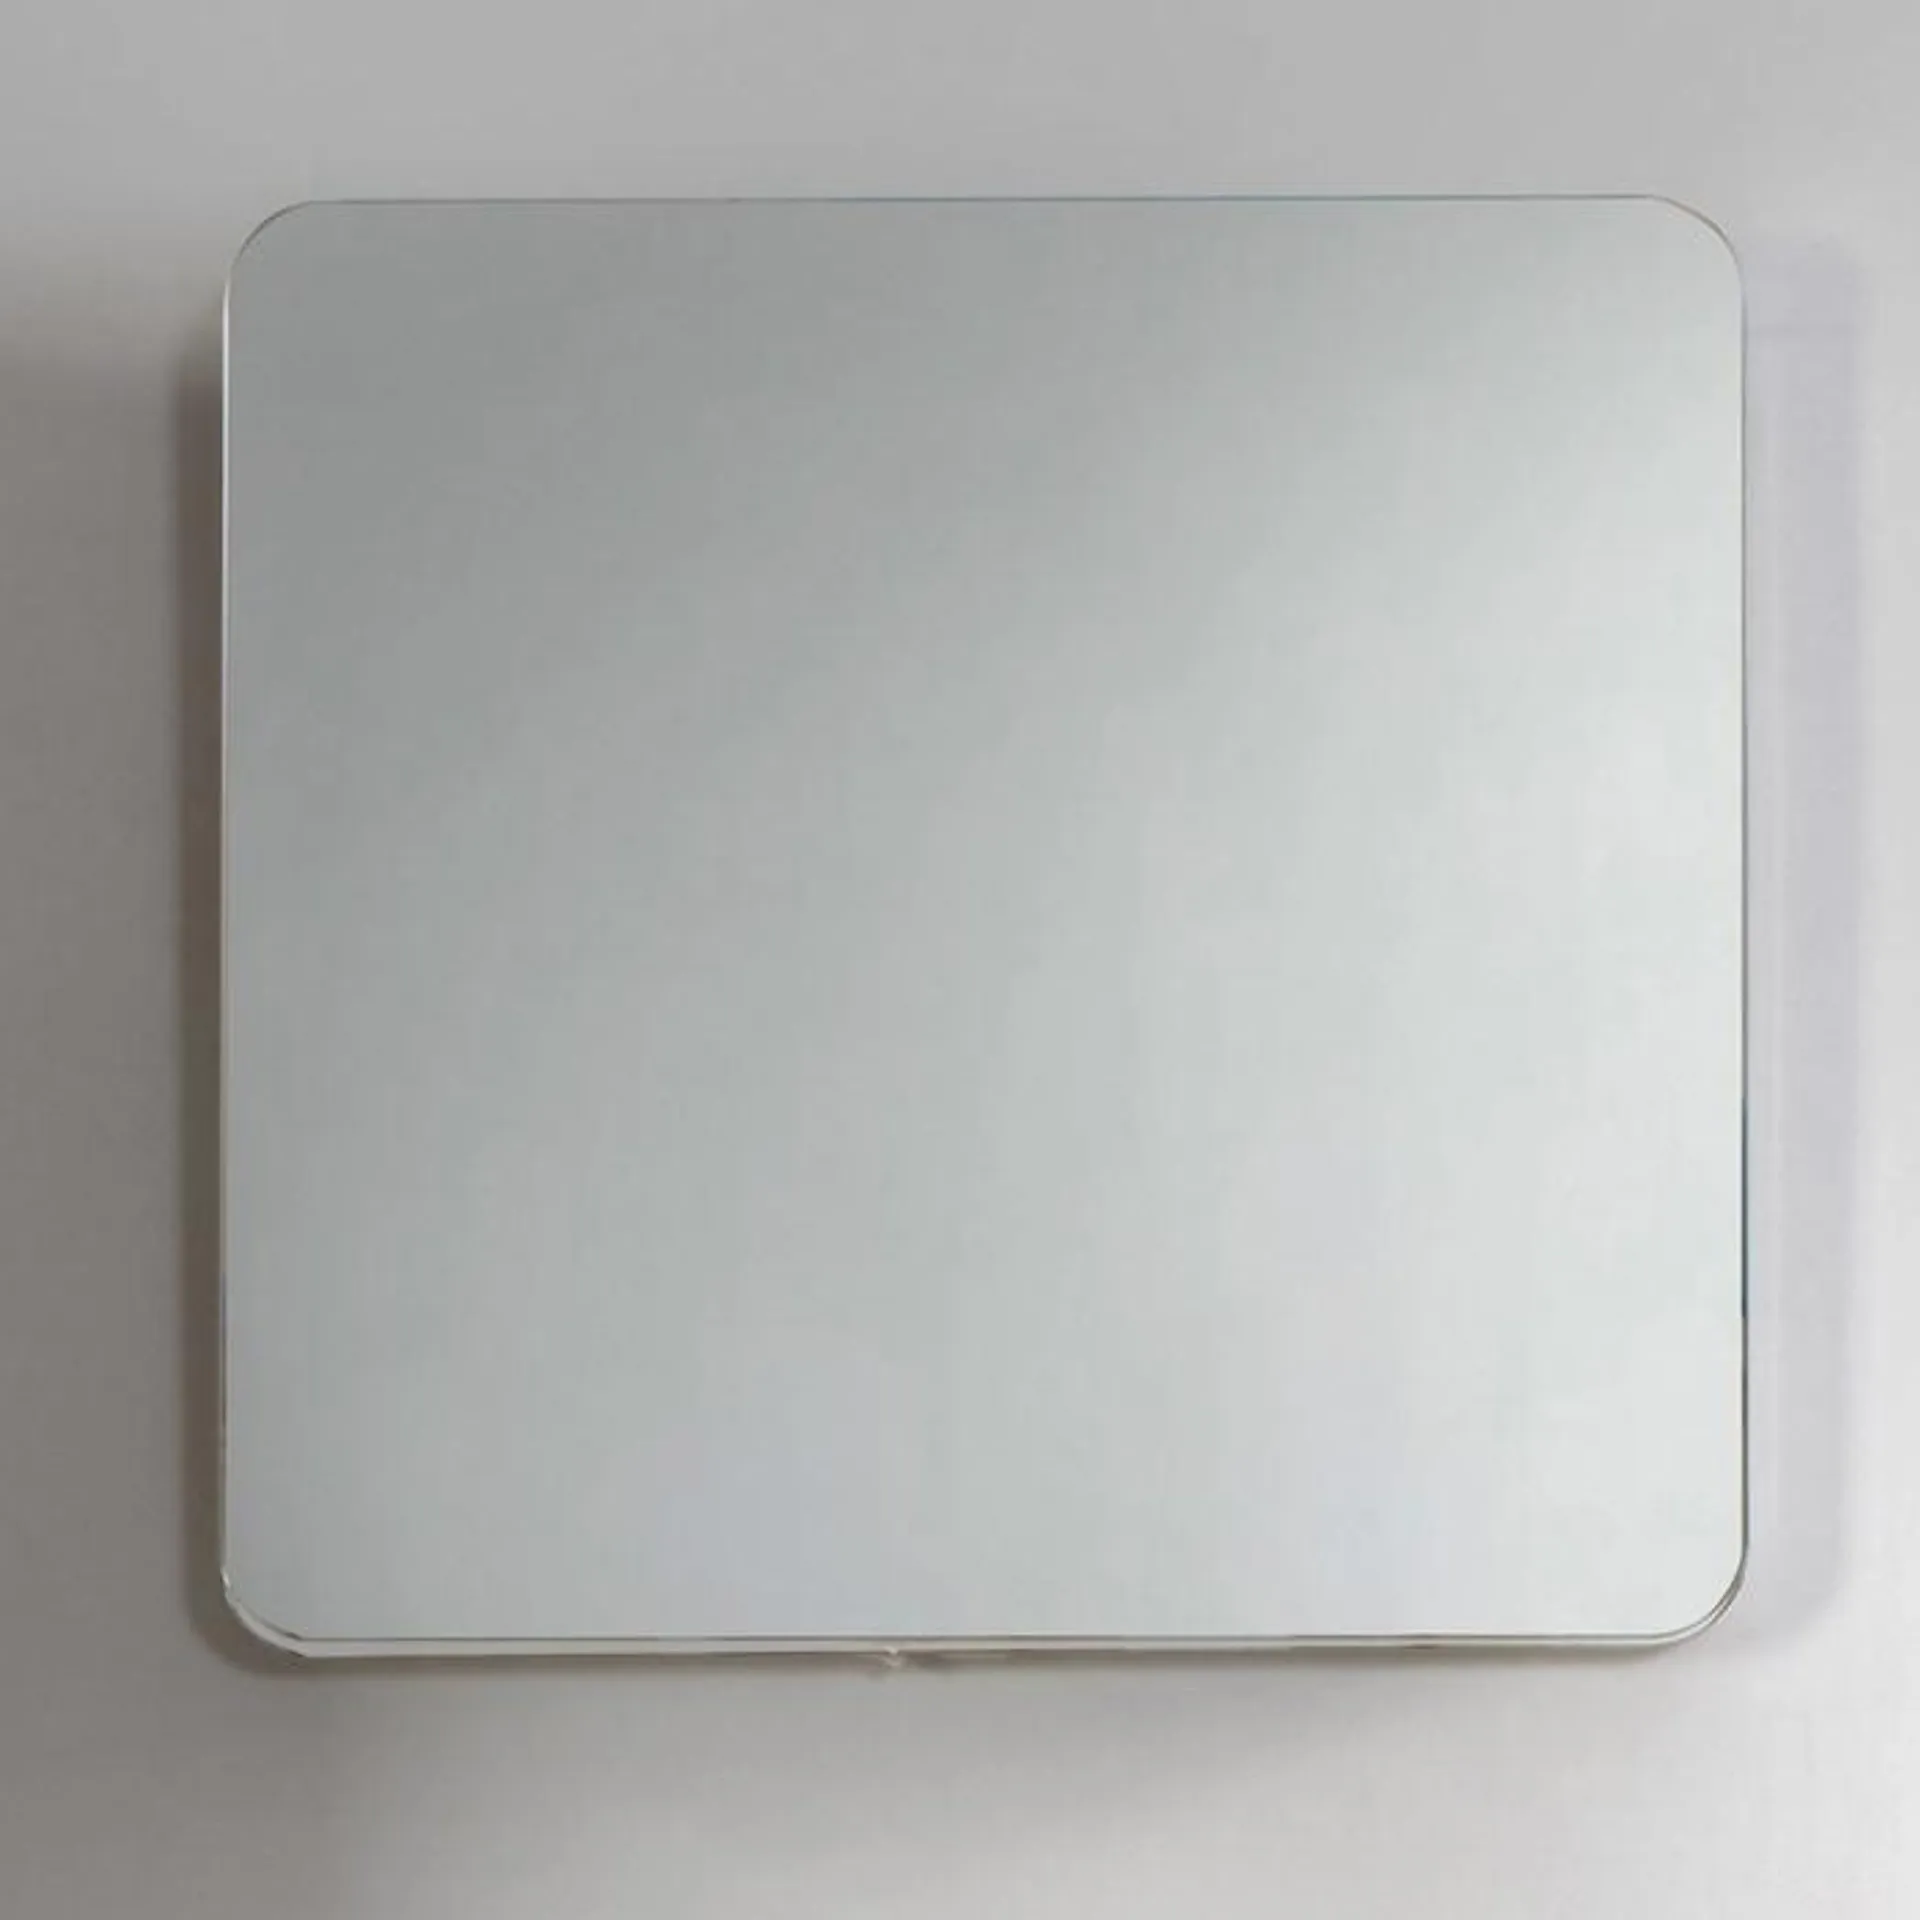 Oglinda decorativa, Martplast Tera 60, 55 x 55 cm